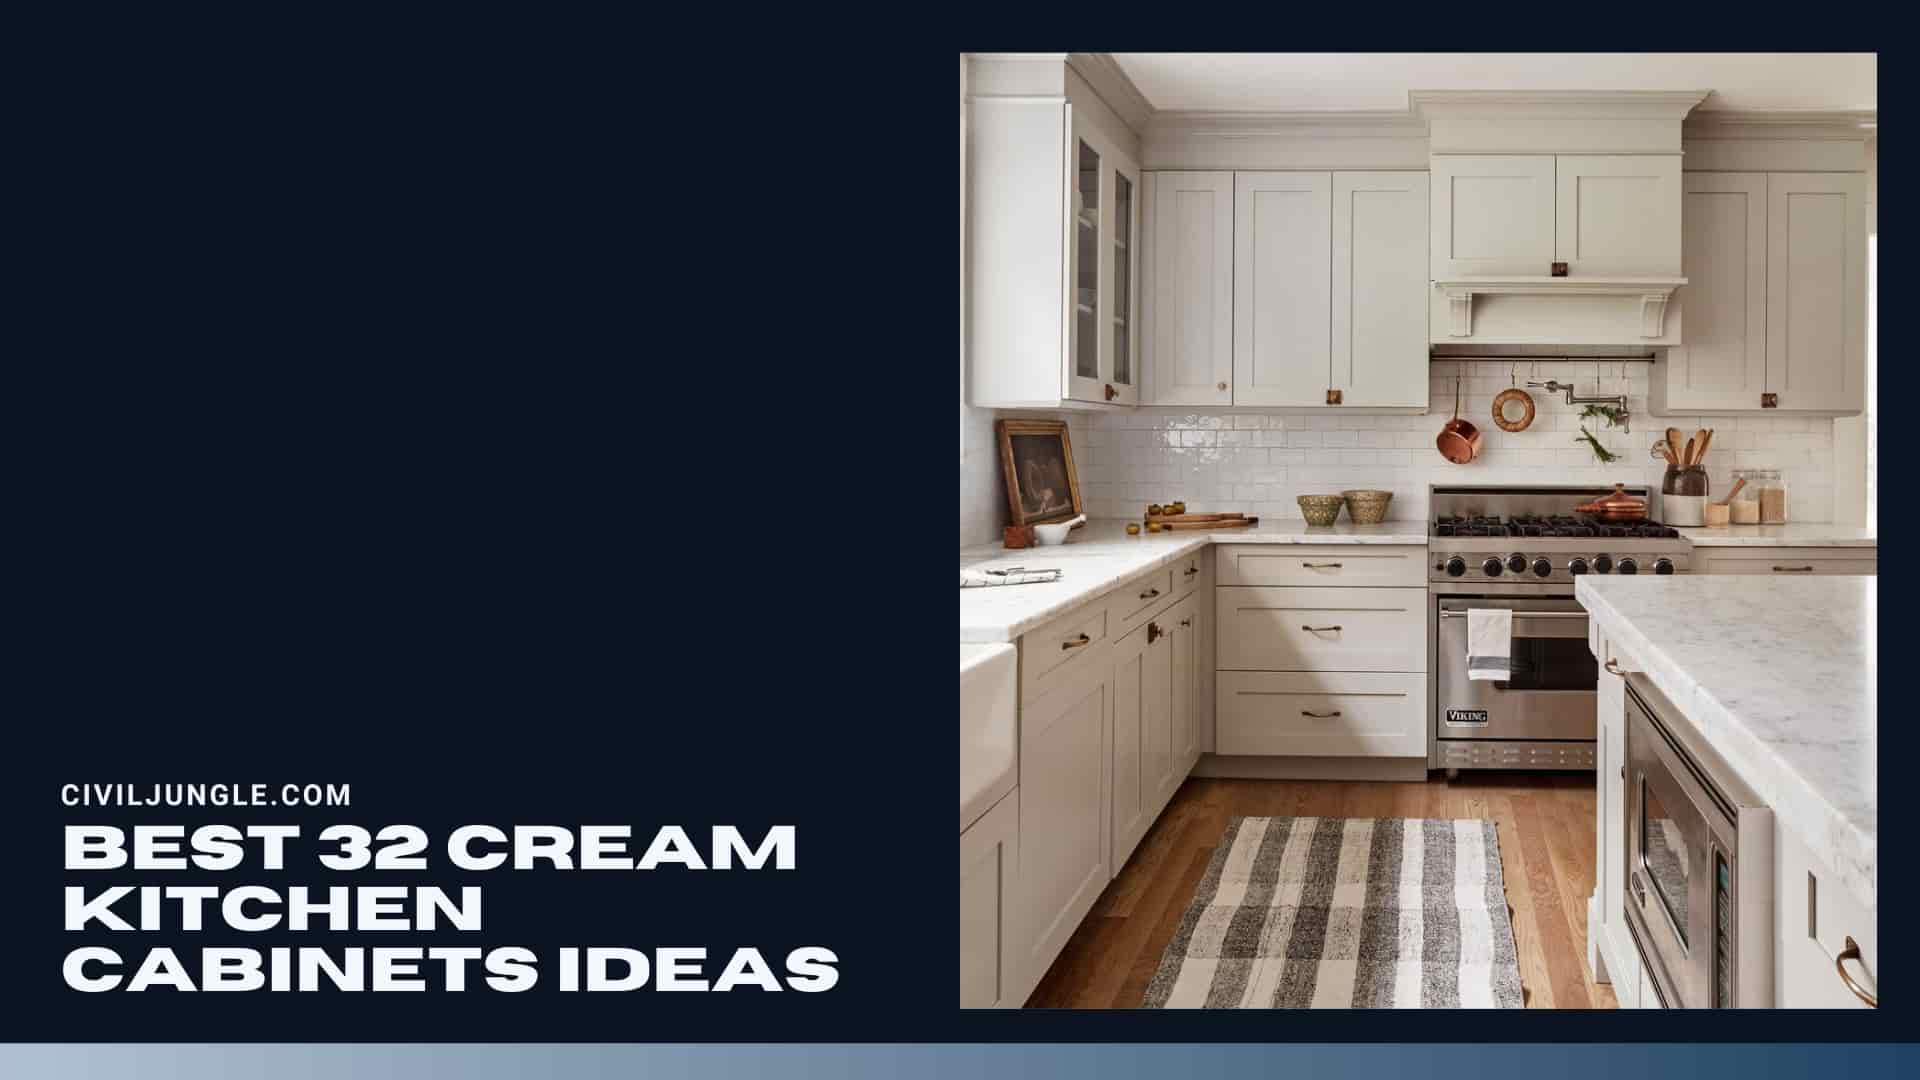 Best 32 Cream Kitchen Cabinets Ideas